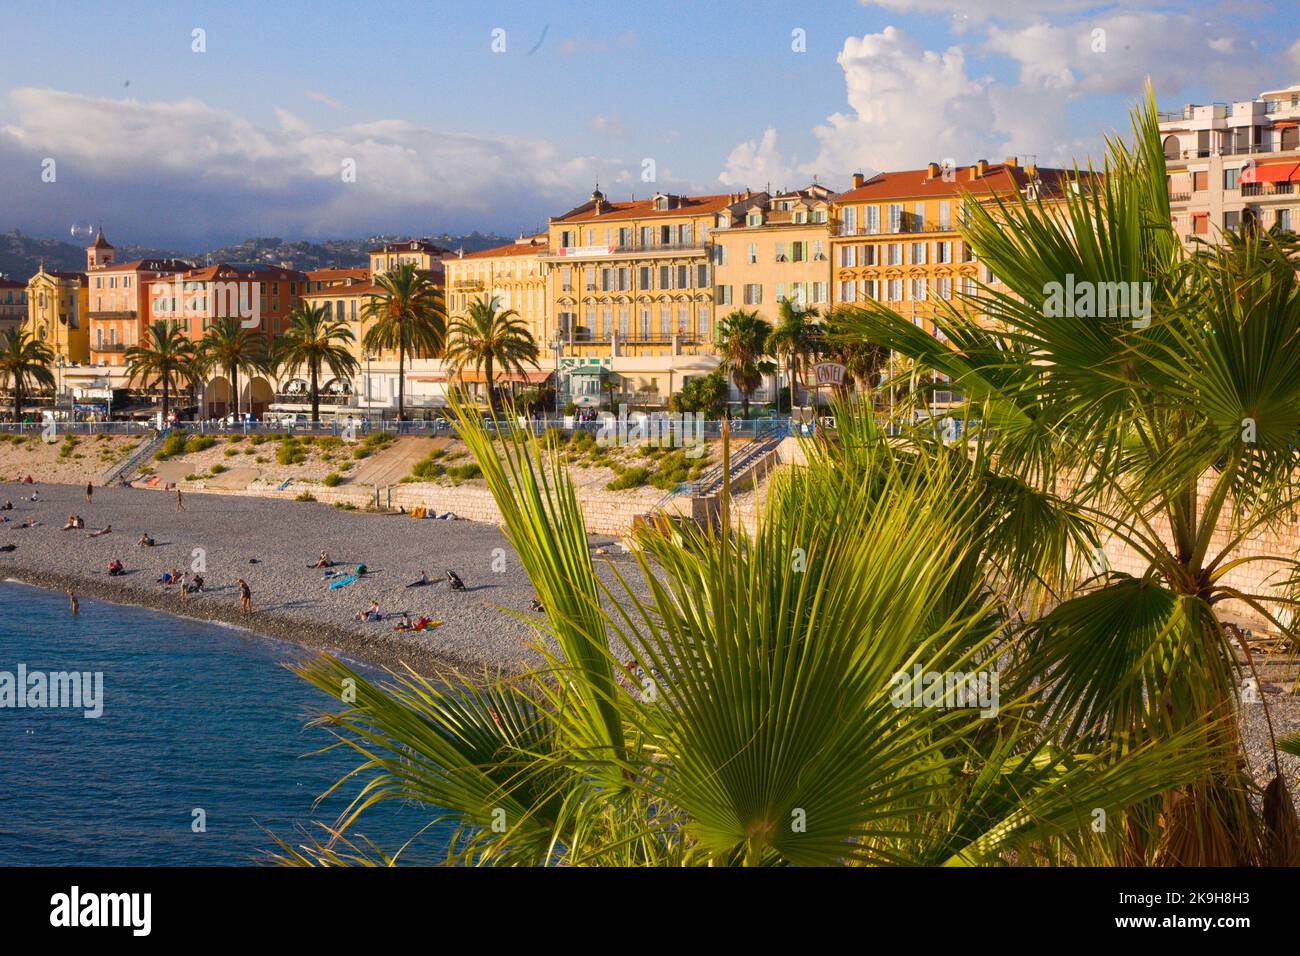 France, Cote d'Azur, Nice, Plage des Ponchettes, beach, people, Stock Photo